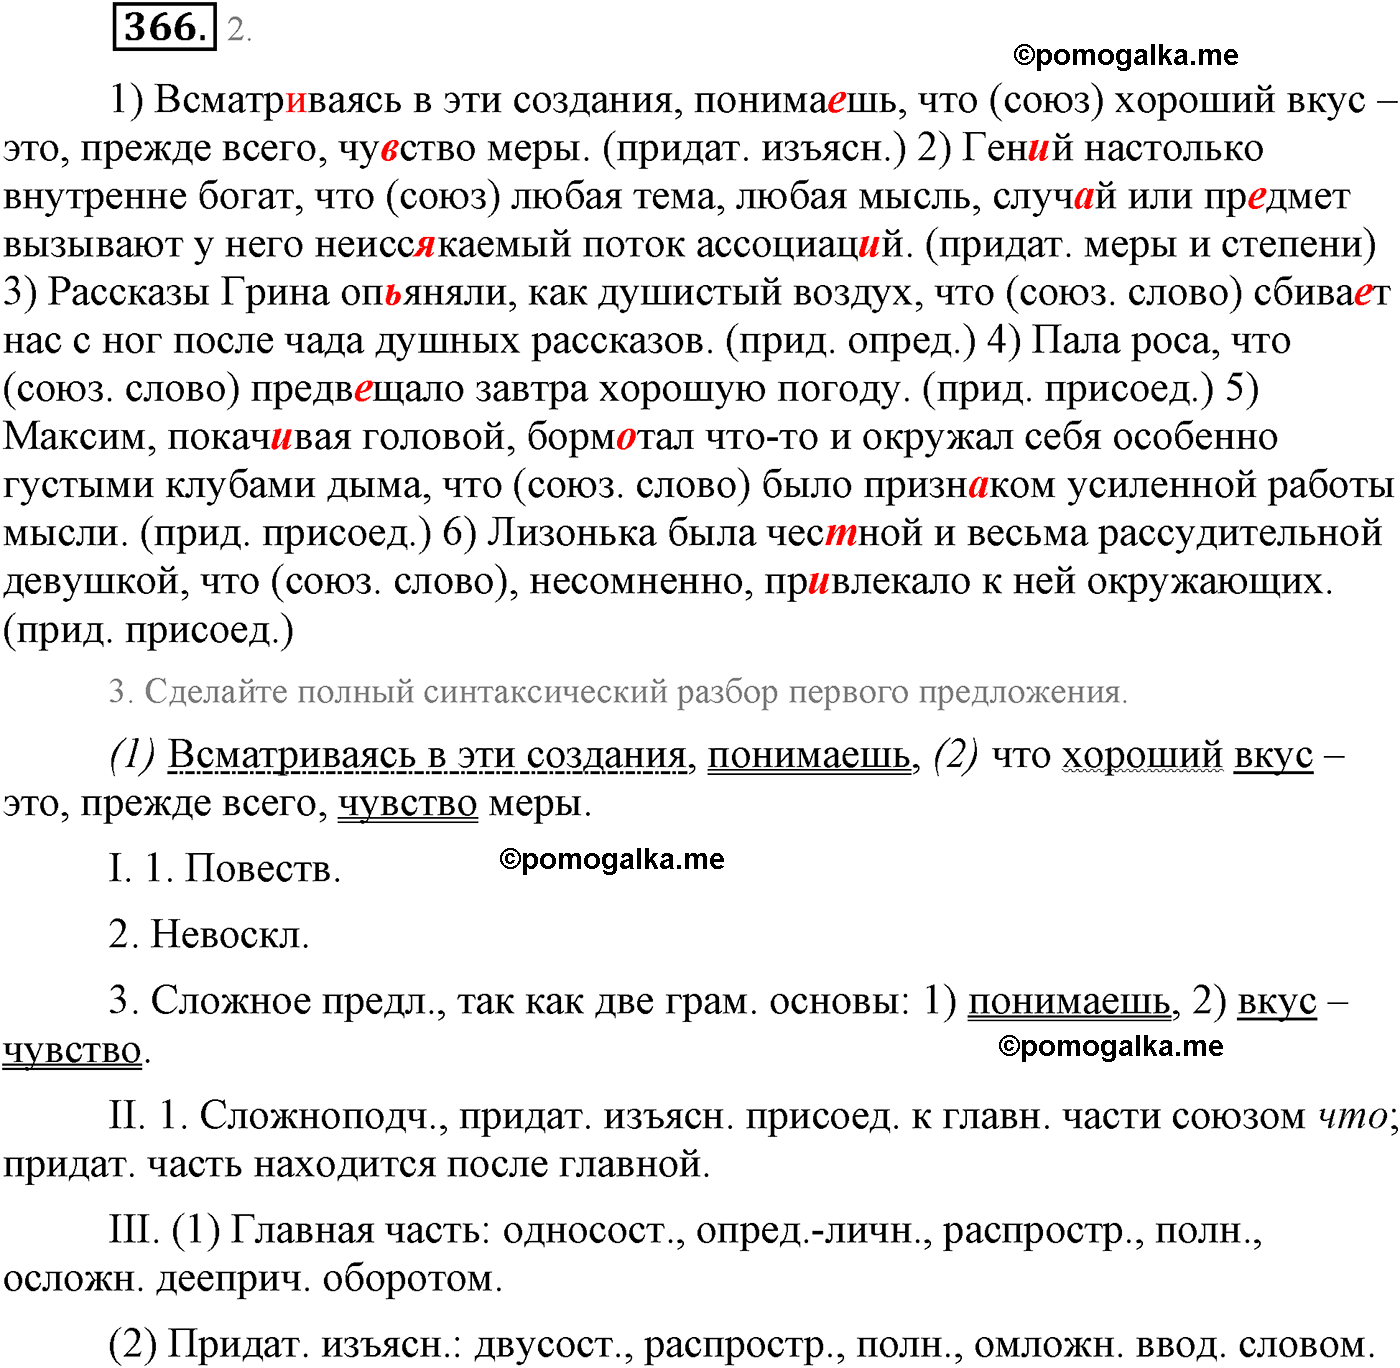 упражнение №366 русский язык 9 класс Львова